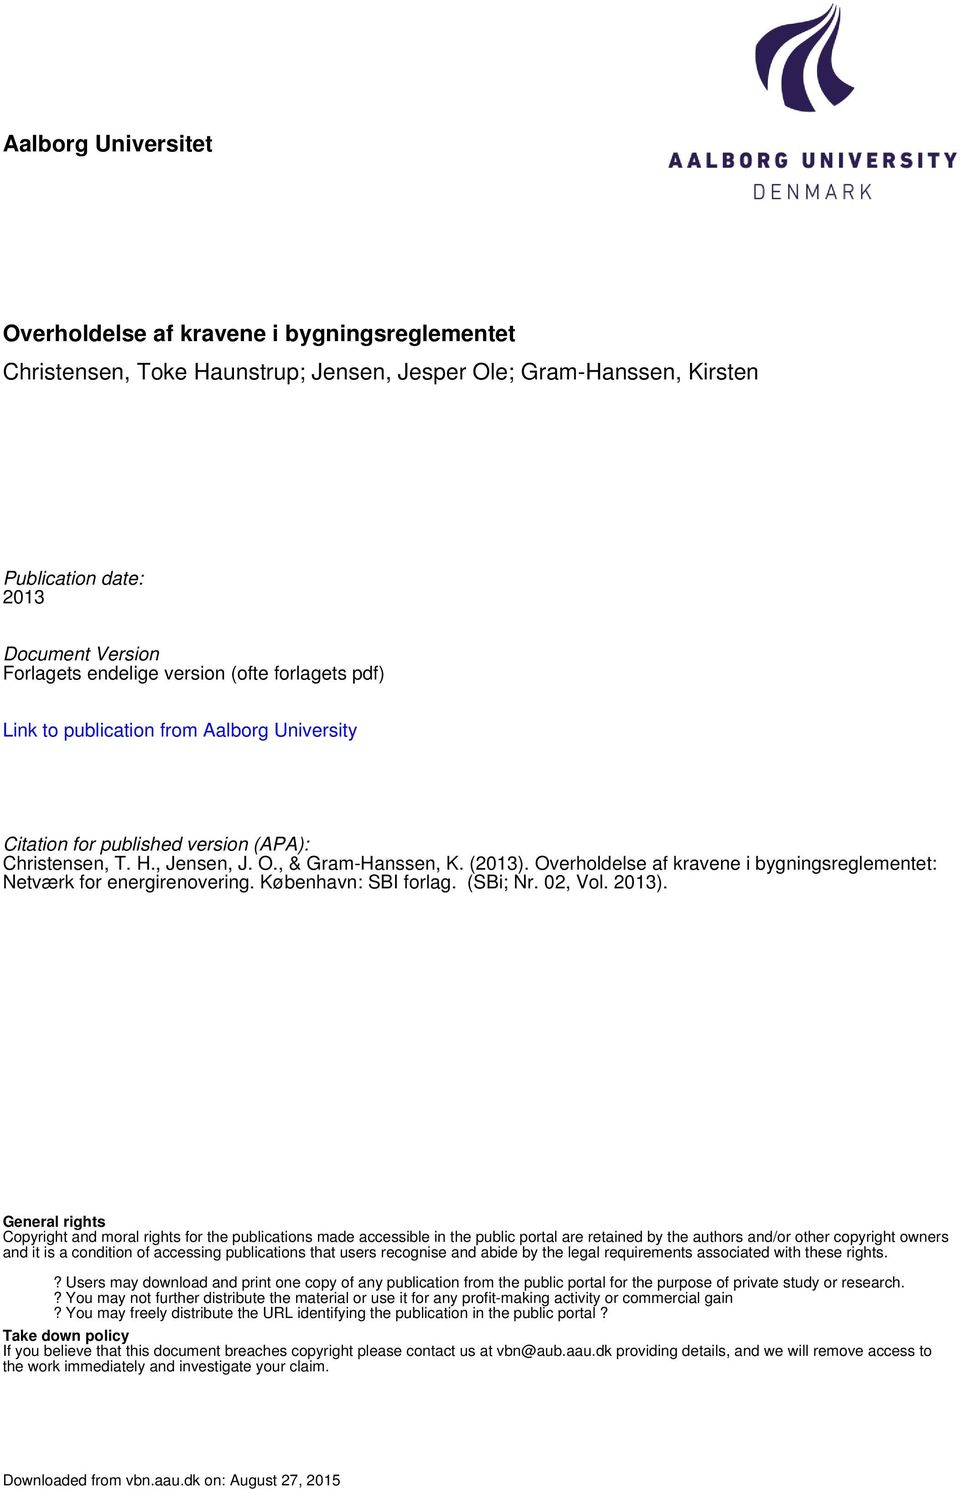 Overholdelse af kravene i bygningsreglementet: Netværk for energirenovering. København: SBI forlag. (SBi; Nr. 02, Vol. 2013).